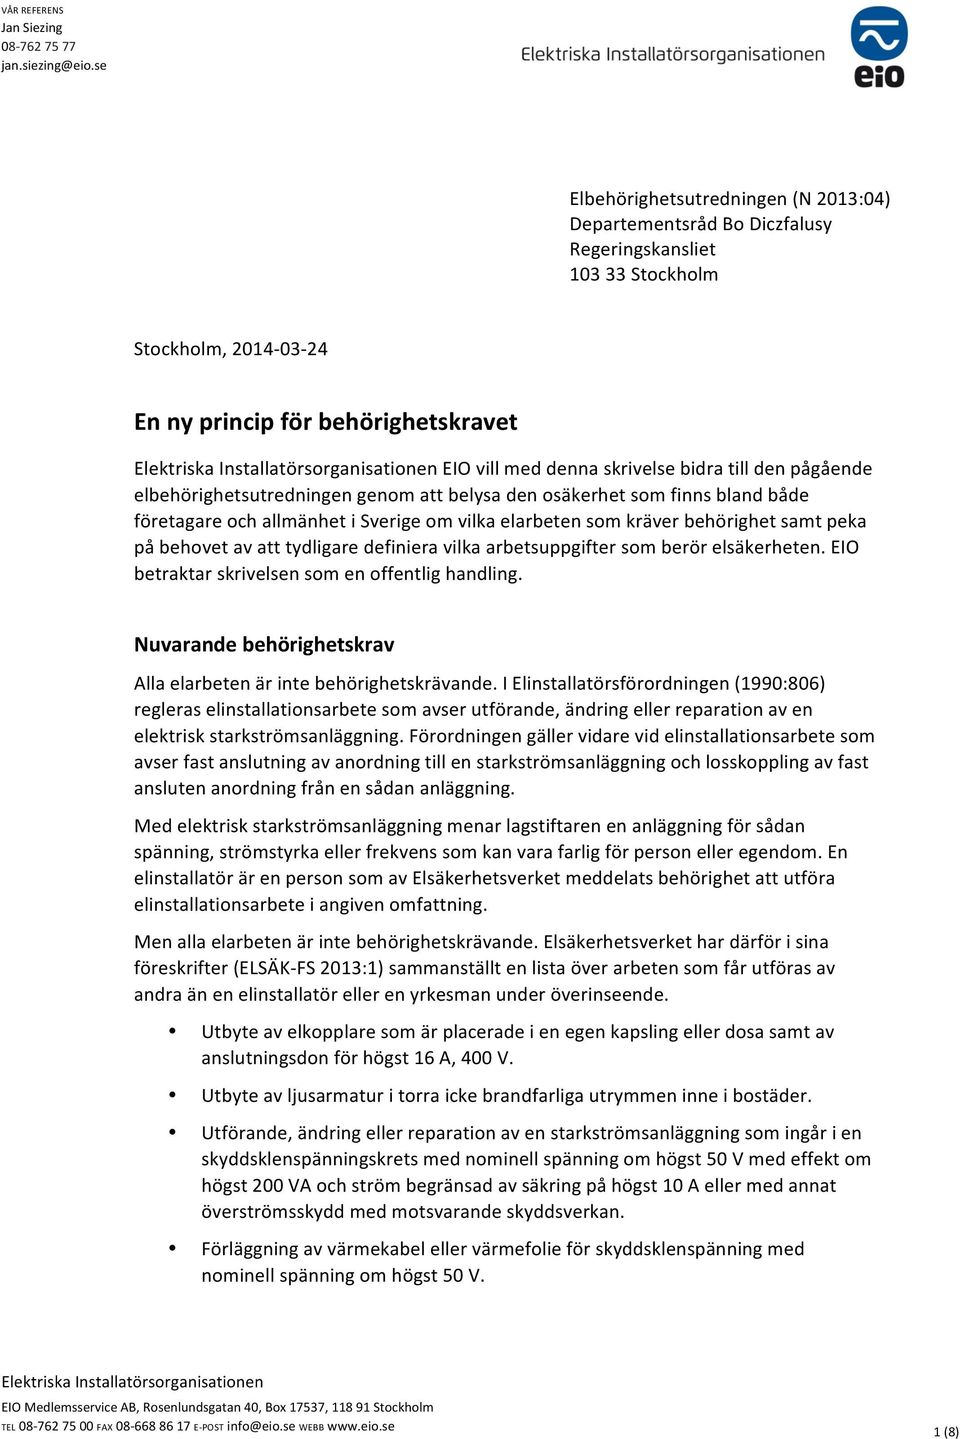 Installatörsorganisationen EIO vill med denna skrivelse bidra till den pågående elbehörighetsutredningen genom att belysa den osäkerhet som finns bland både företagare och allmänhet i Sverige om